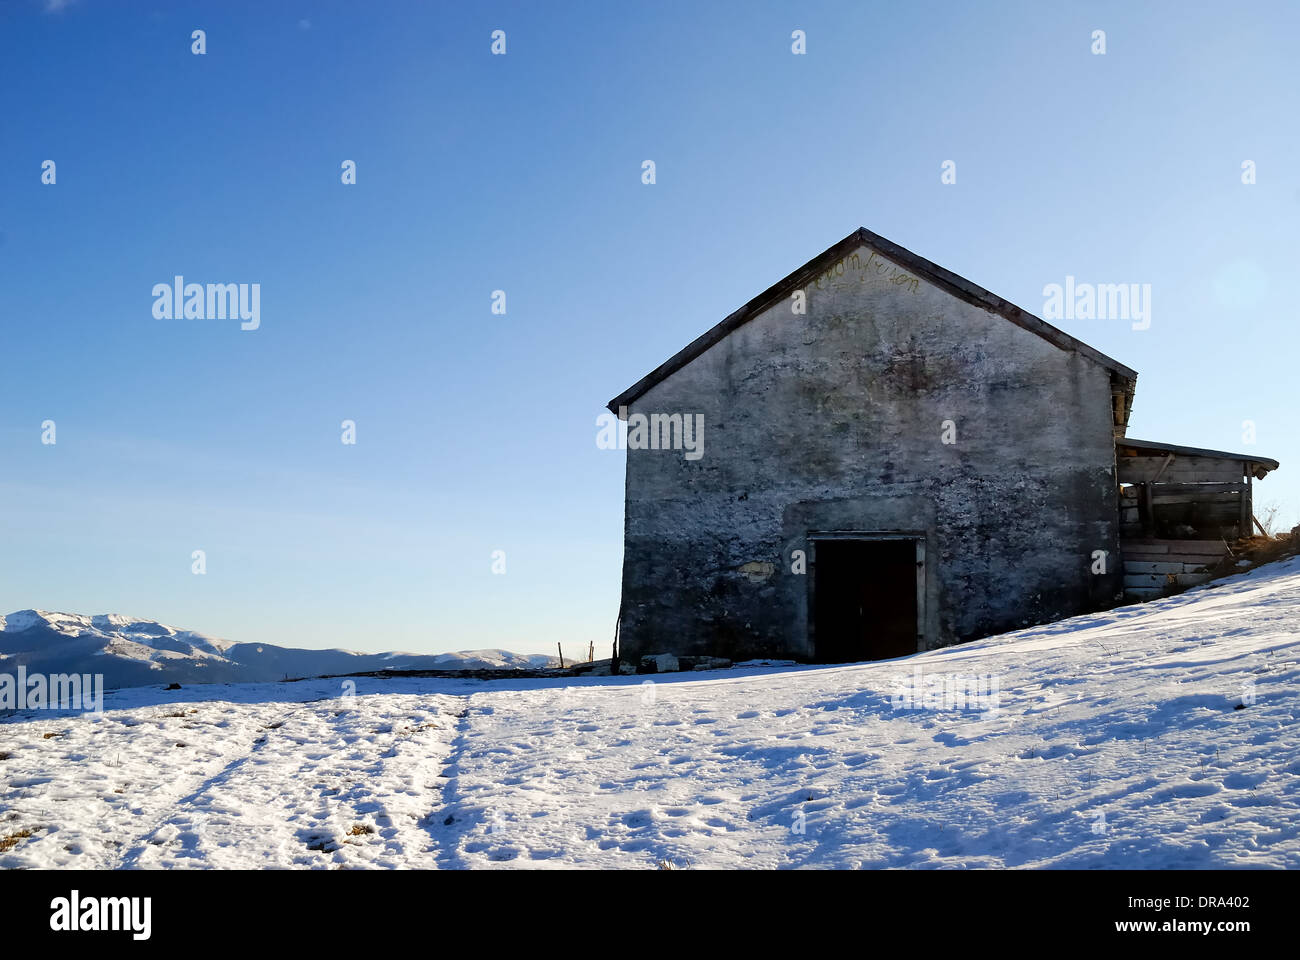 Enego, Venetian Pre-Alps, Italy. A mountain hut in the snow. Stock Photo